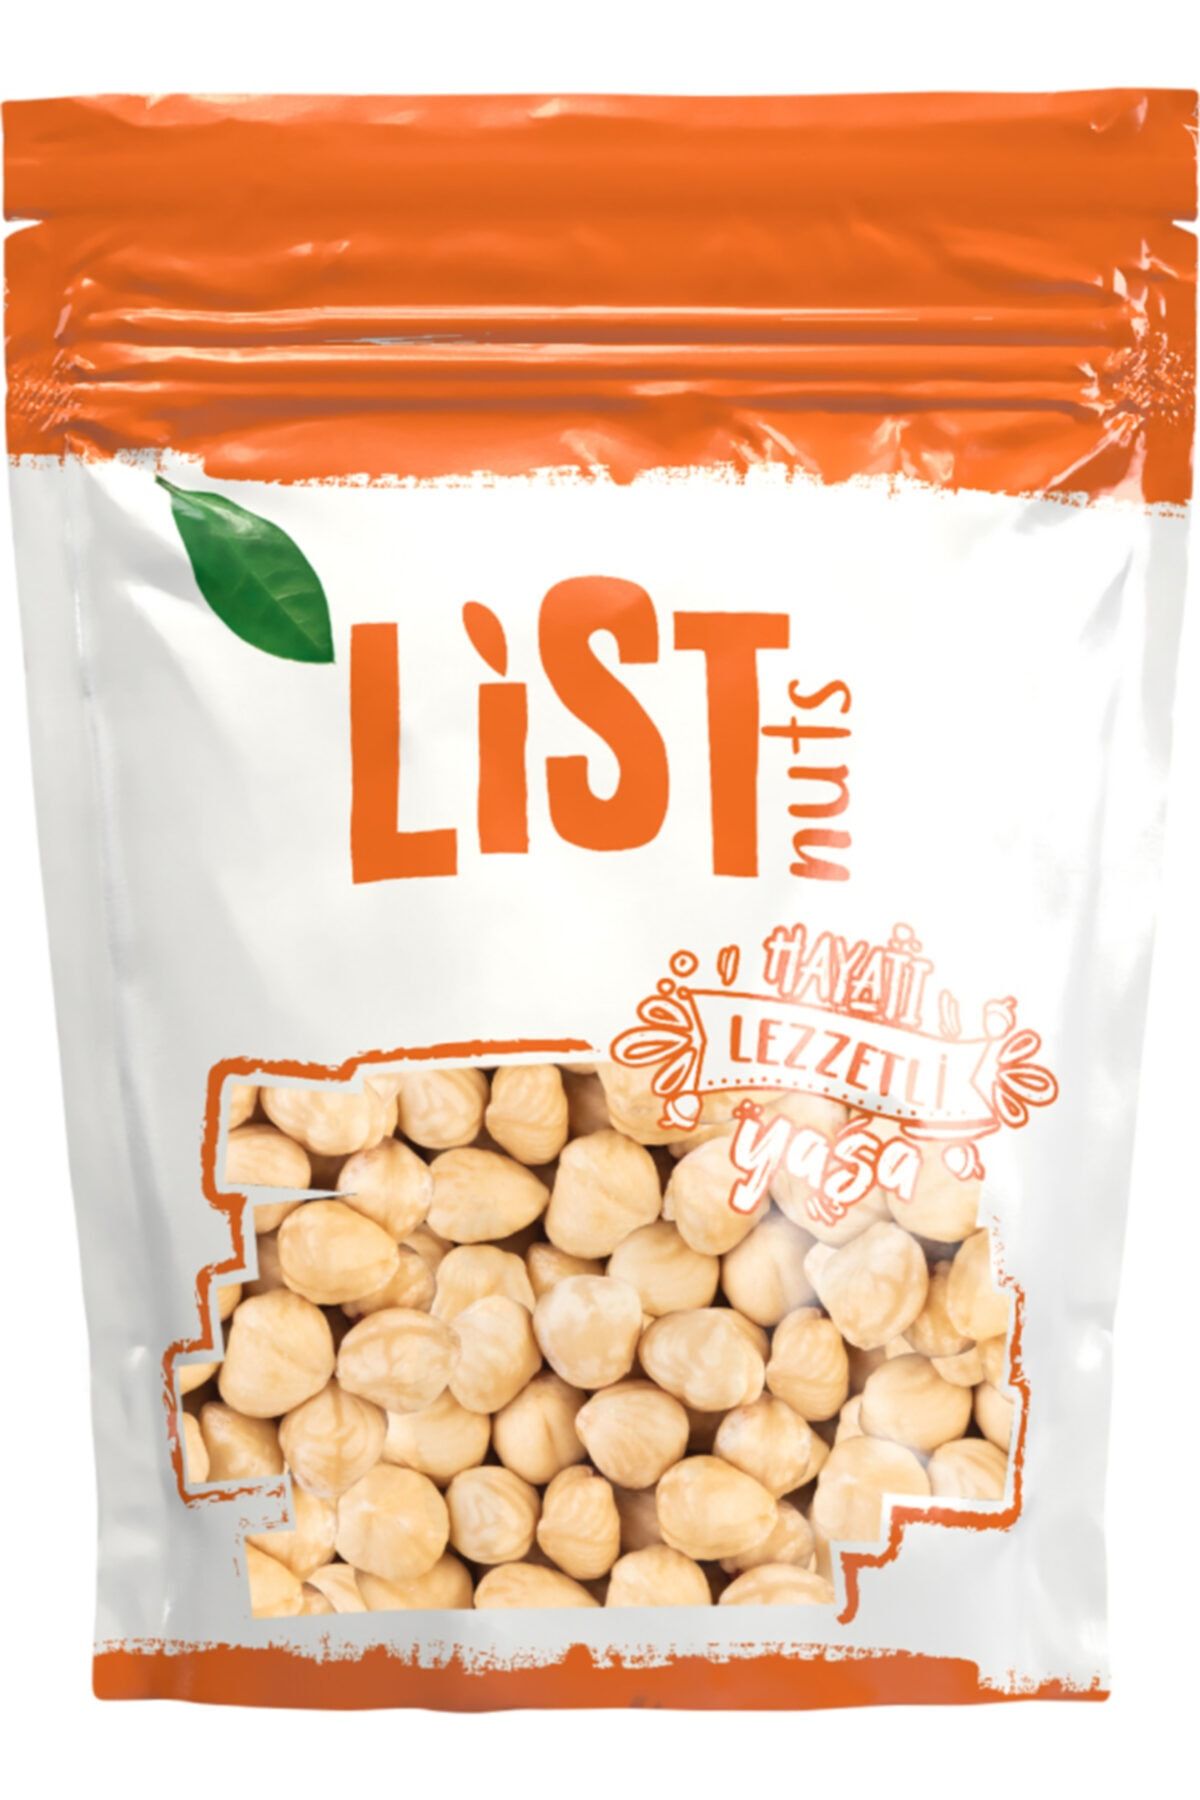 List Nuts Kavrulmuş Fındık Içi 1 kg